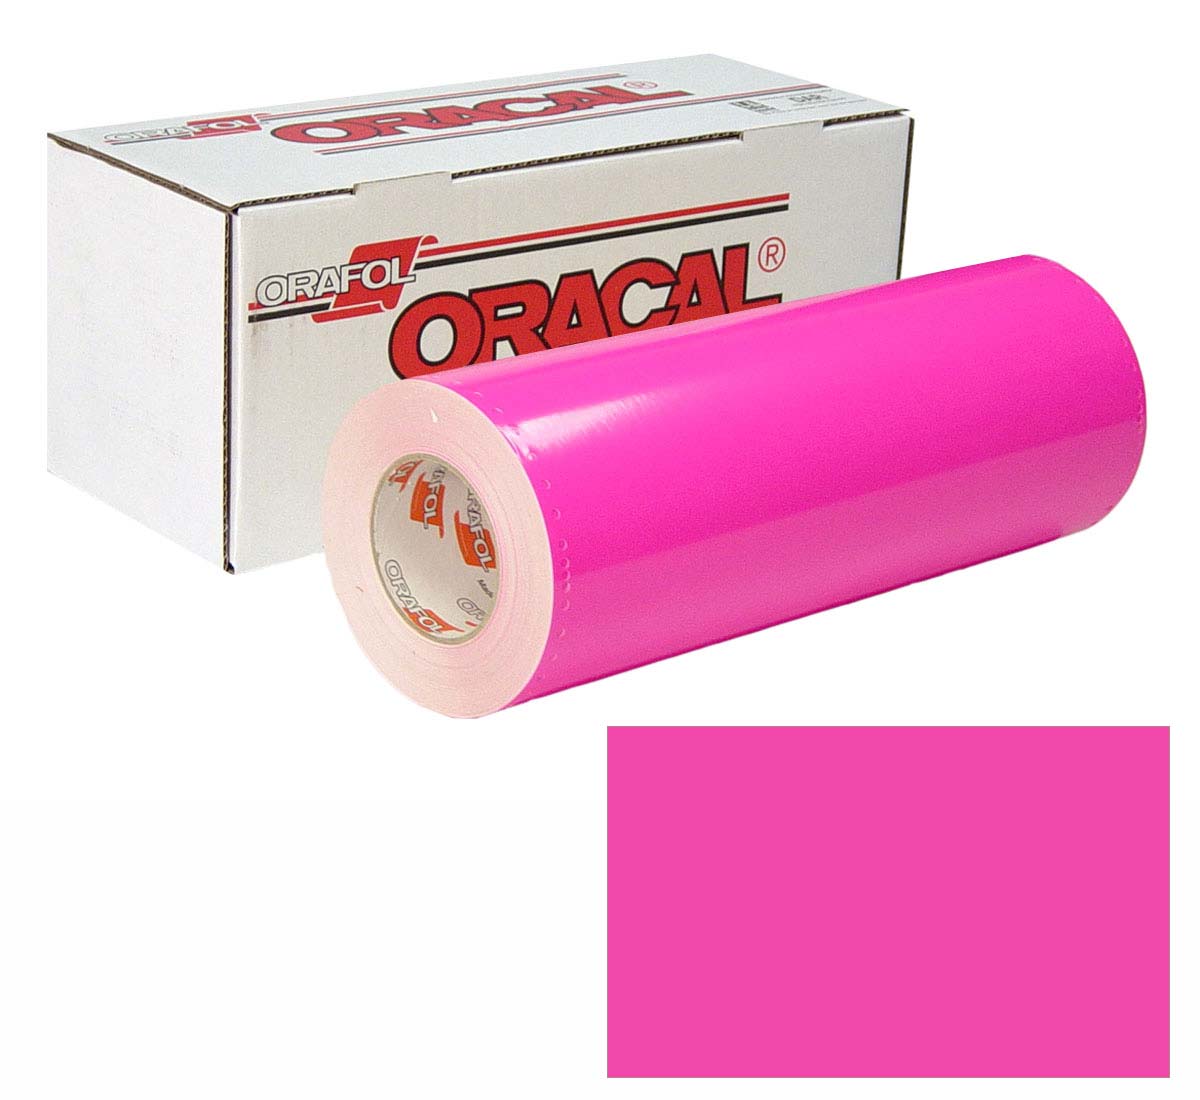 ORACAL 7510 Fluor Unp 24in X 10yd 046 Pink